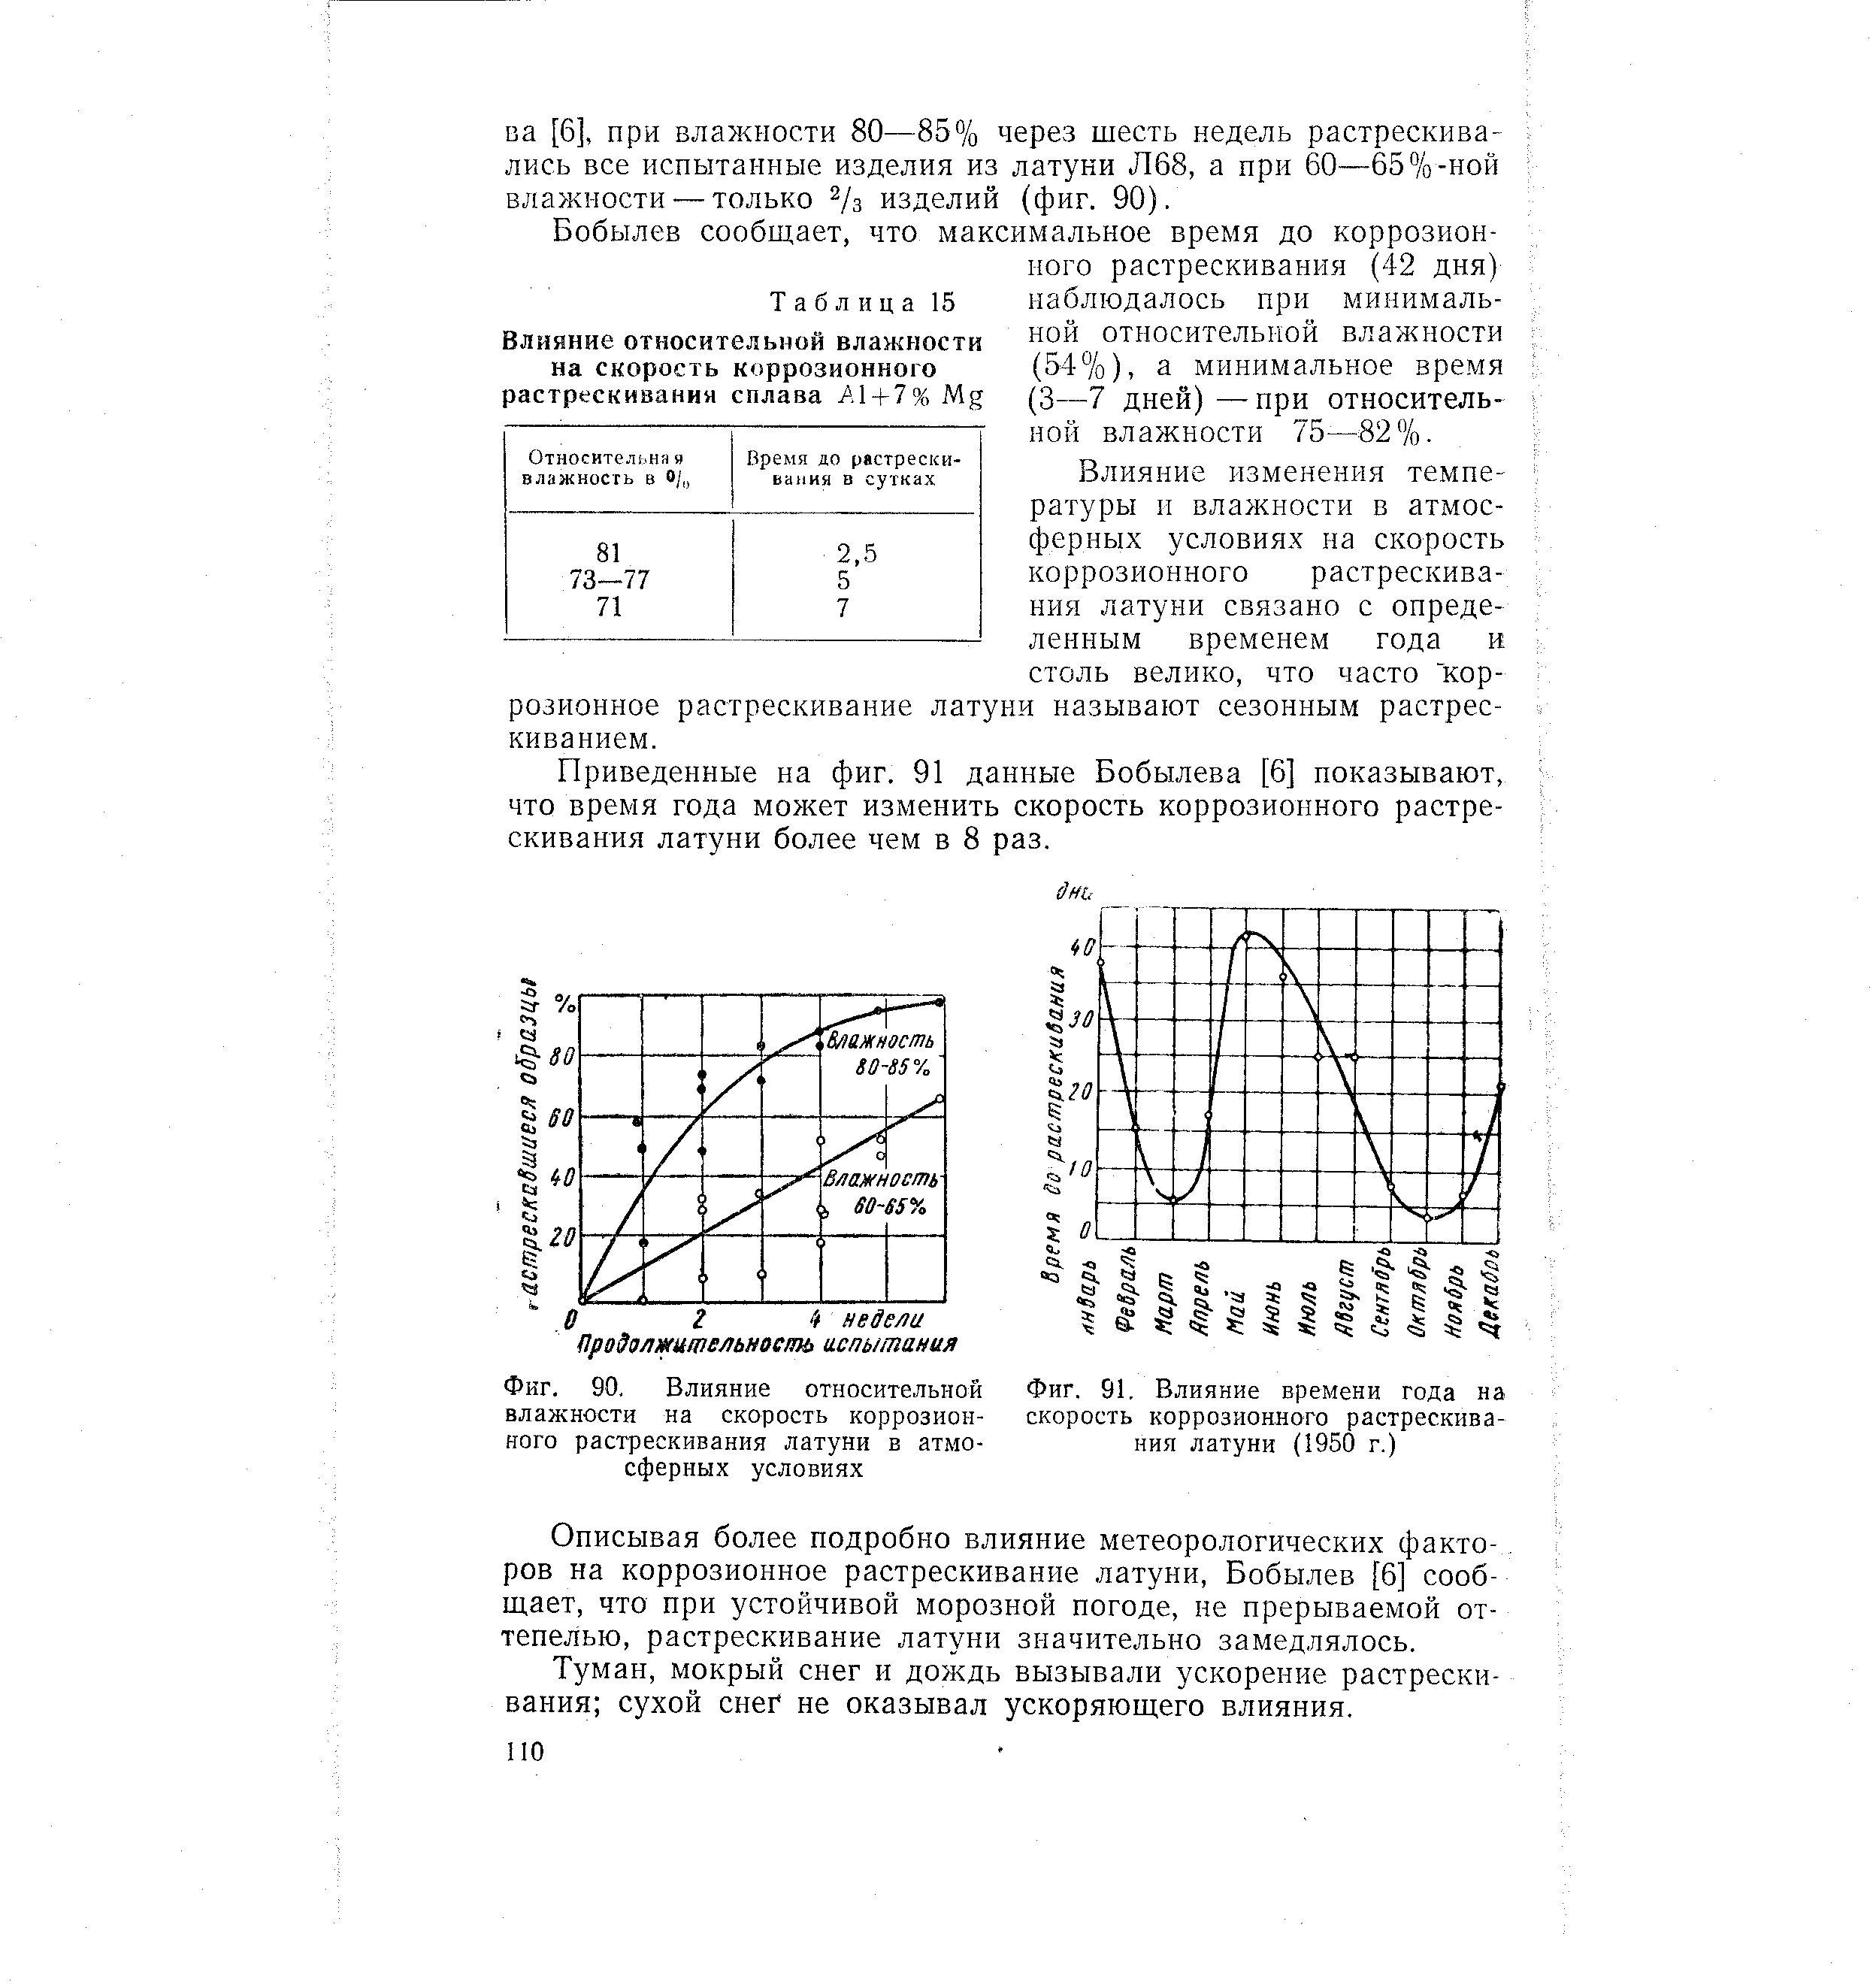 Фиг. 91, Влияние времени года на <a href="/info/48281">скорость коррозионного</a> растрескивания латуни (1950 г.)
